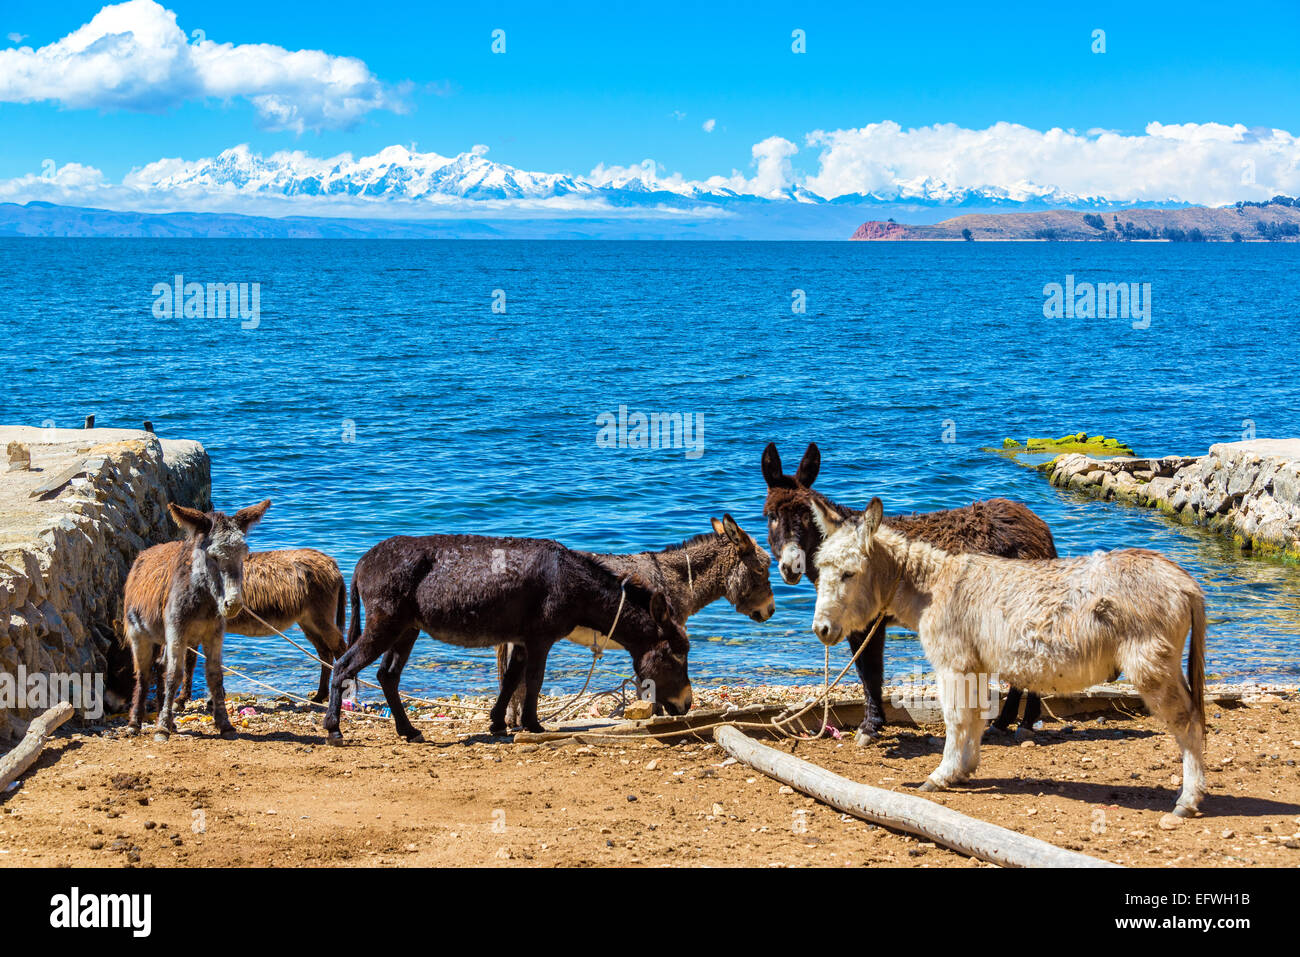 Sei asini in piedi sulla riva del lago Titicaca con le montagne delle Ande in background come visto su Isla del Sol, Bolivia Foto Stock